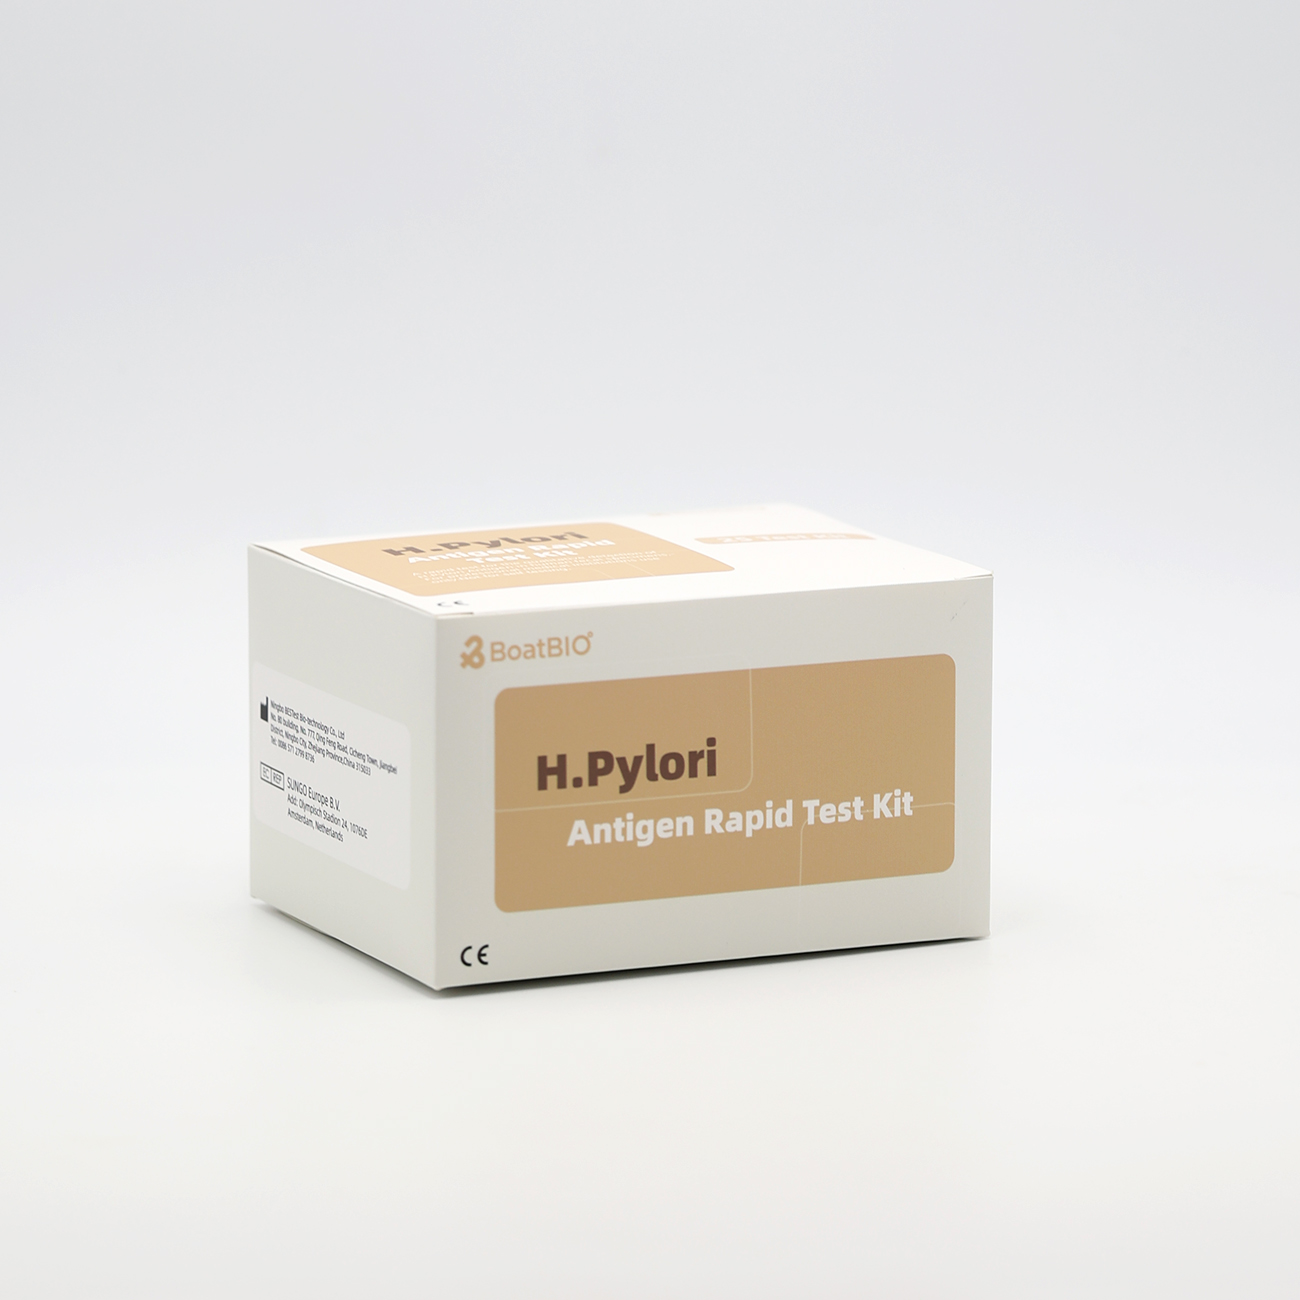 H.Pylori Antigen Rapid Test Kit (lò koloidal)